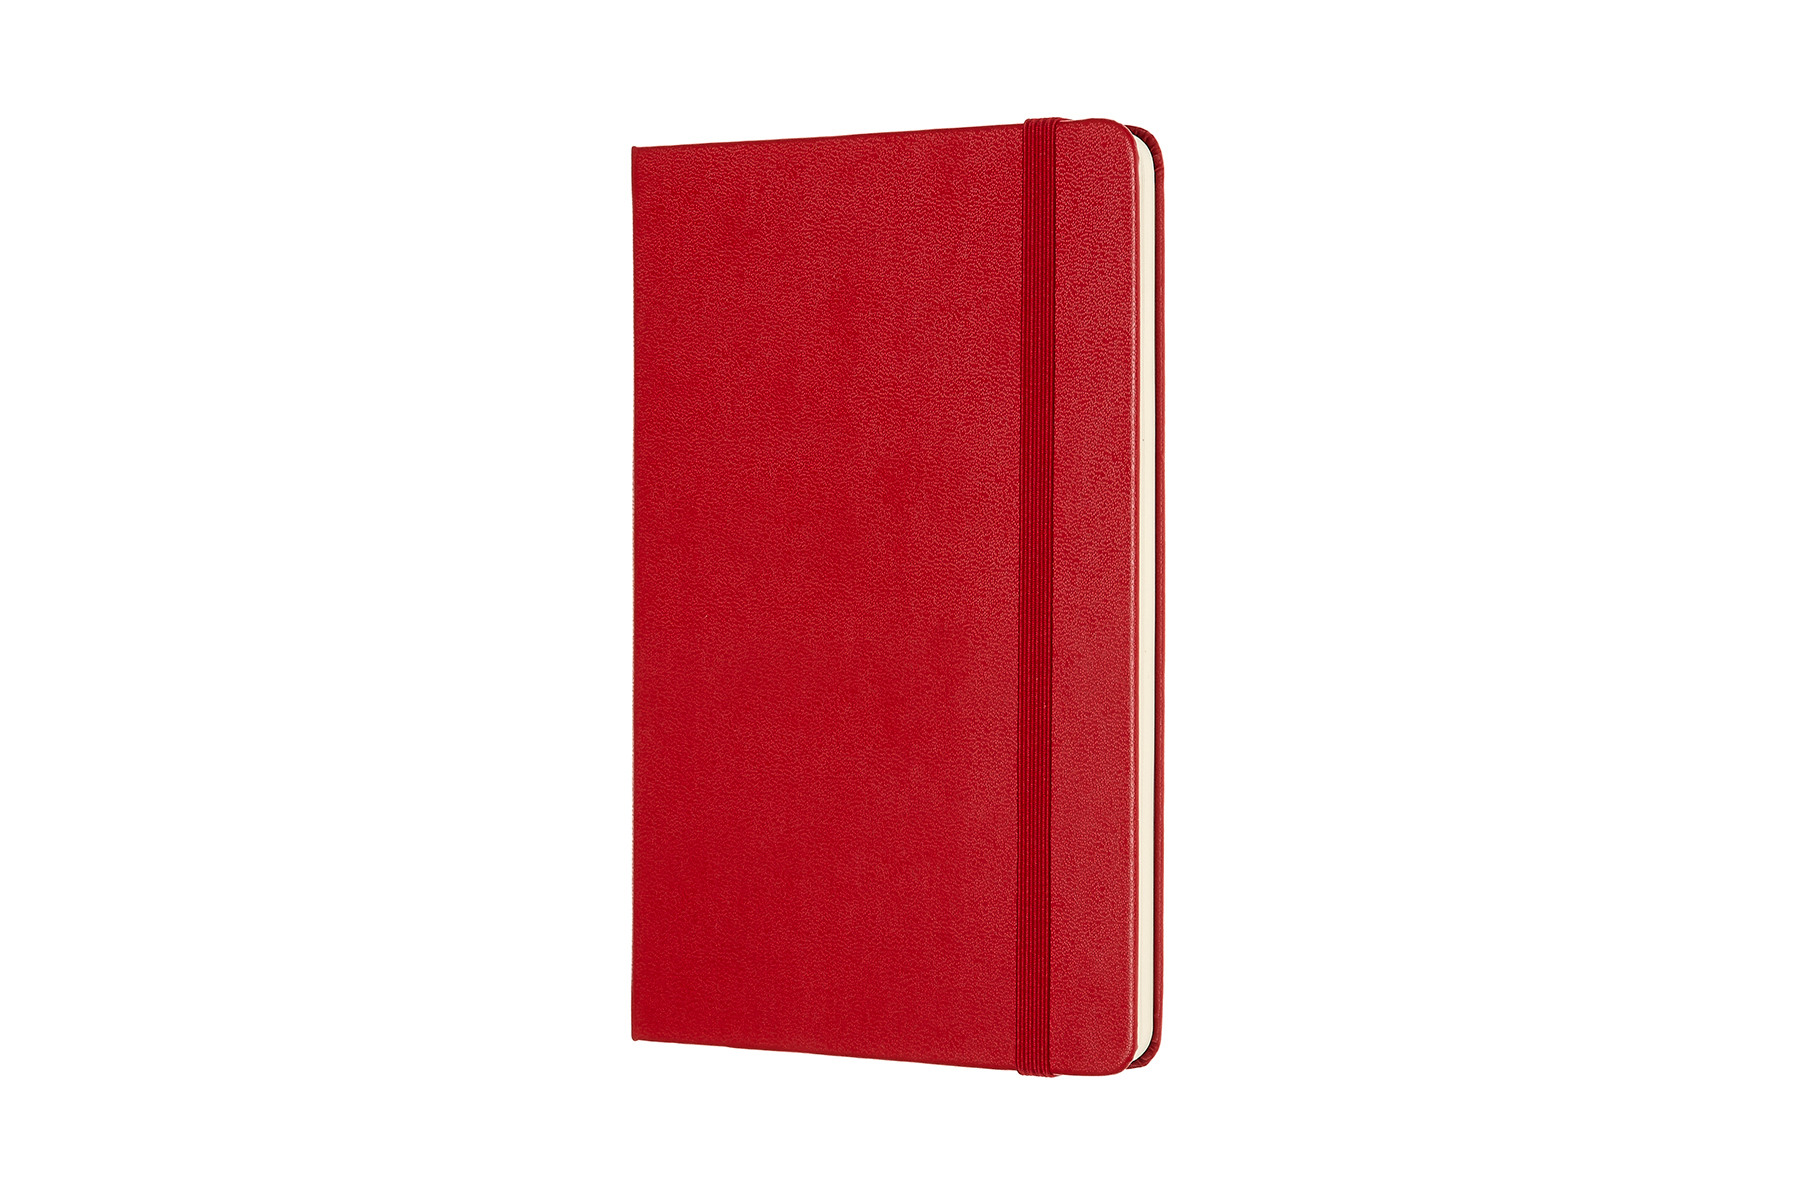 MOLESKINE Carnet Medium HC 18,2x11,8cm 626659 pointé, scarlet, 208 pages